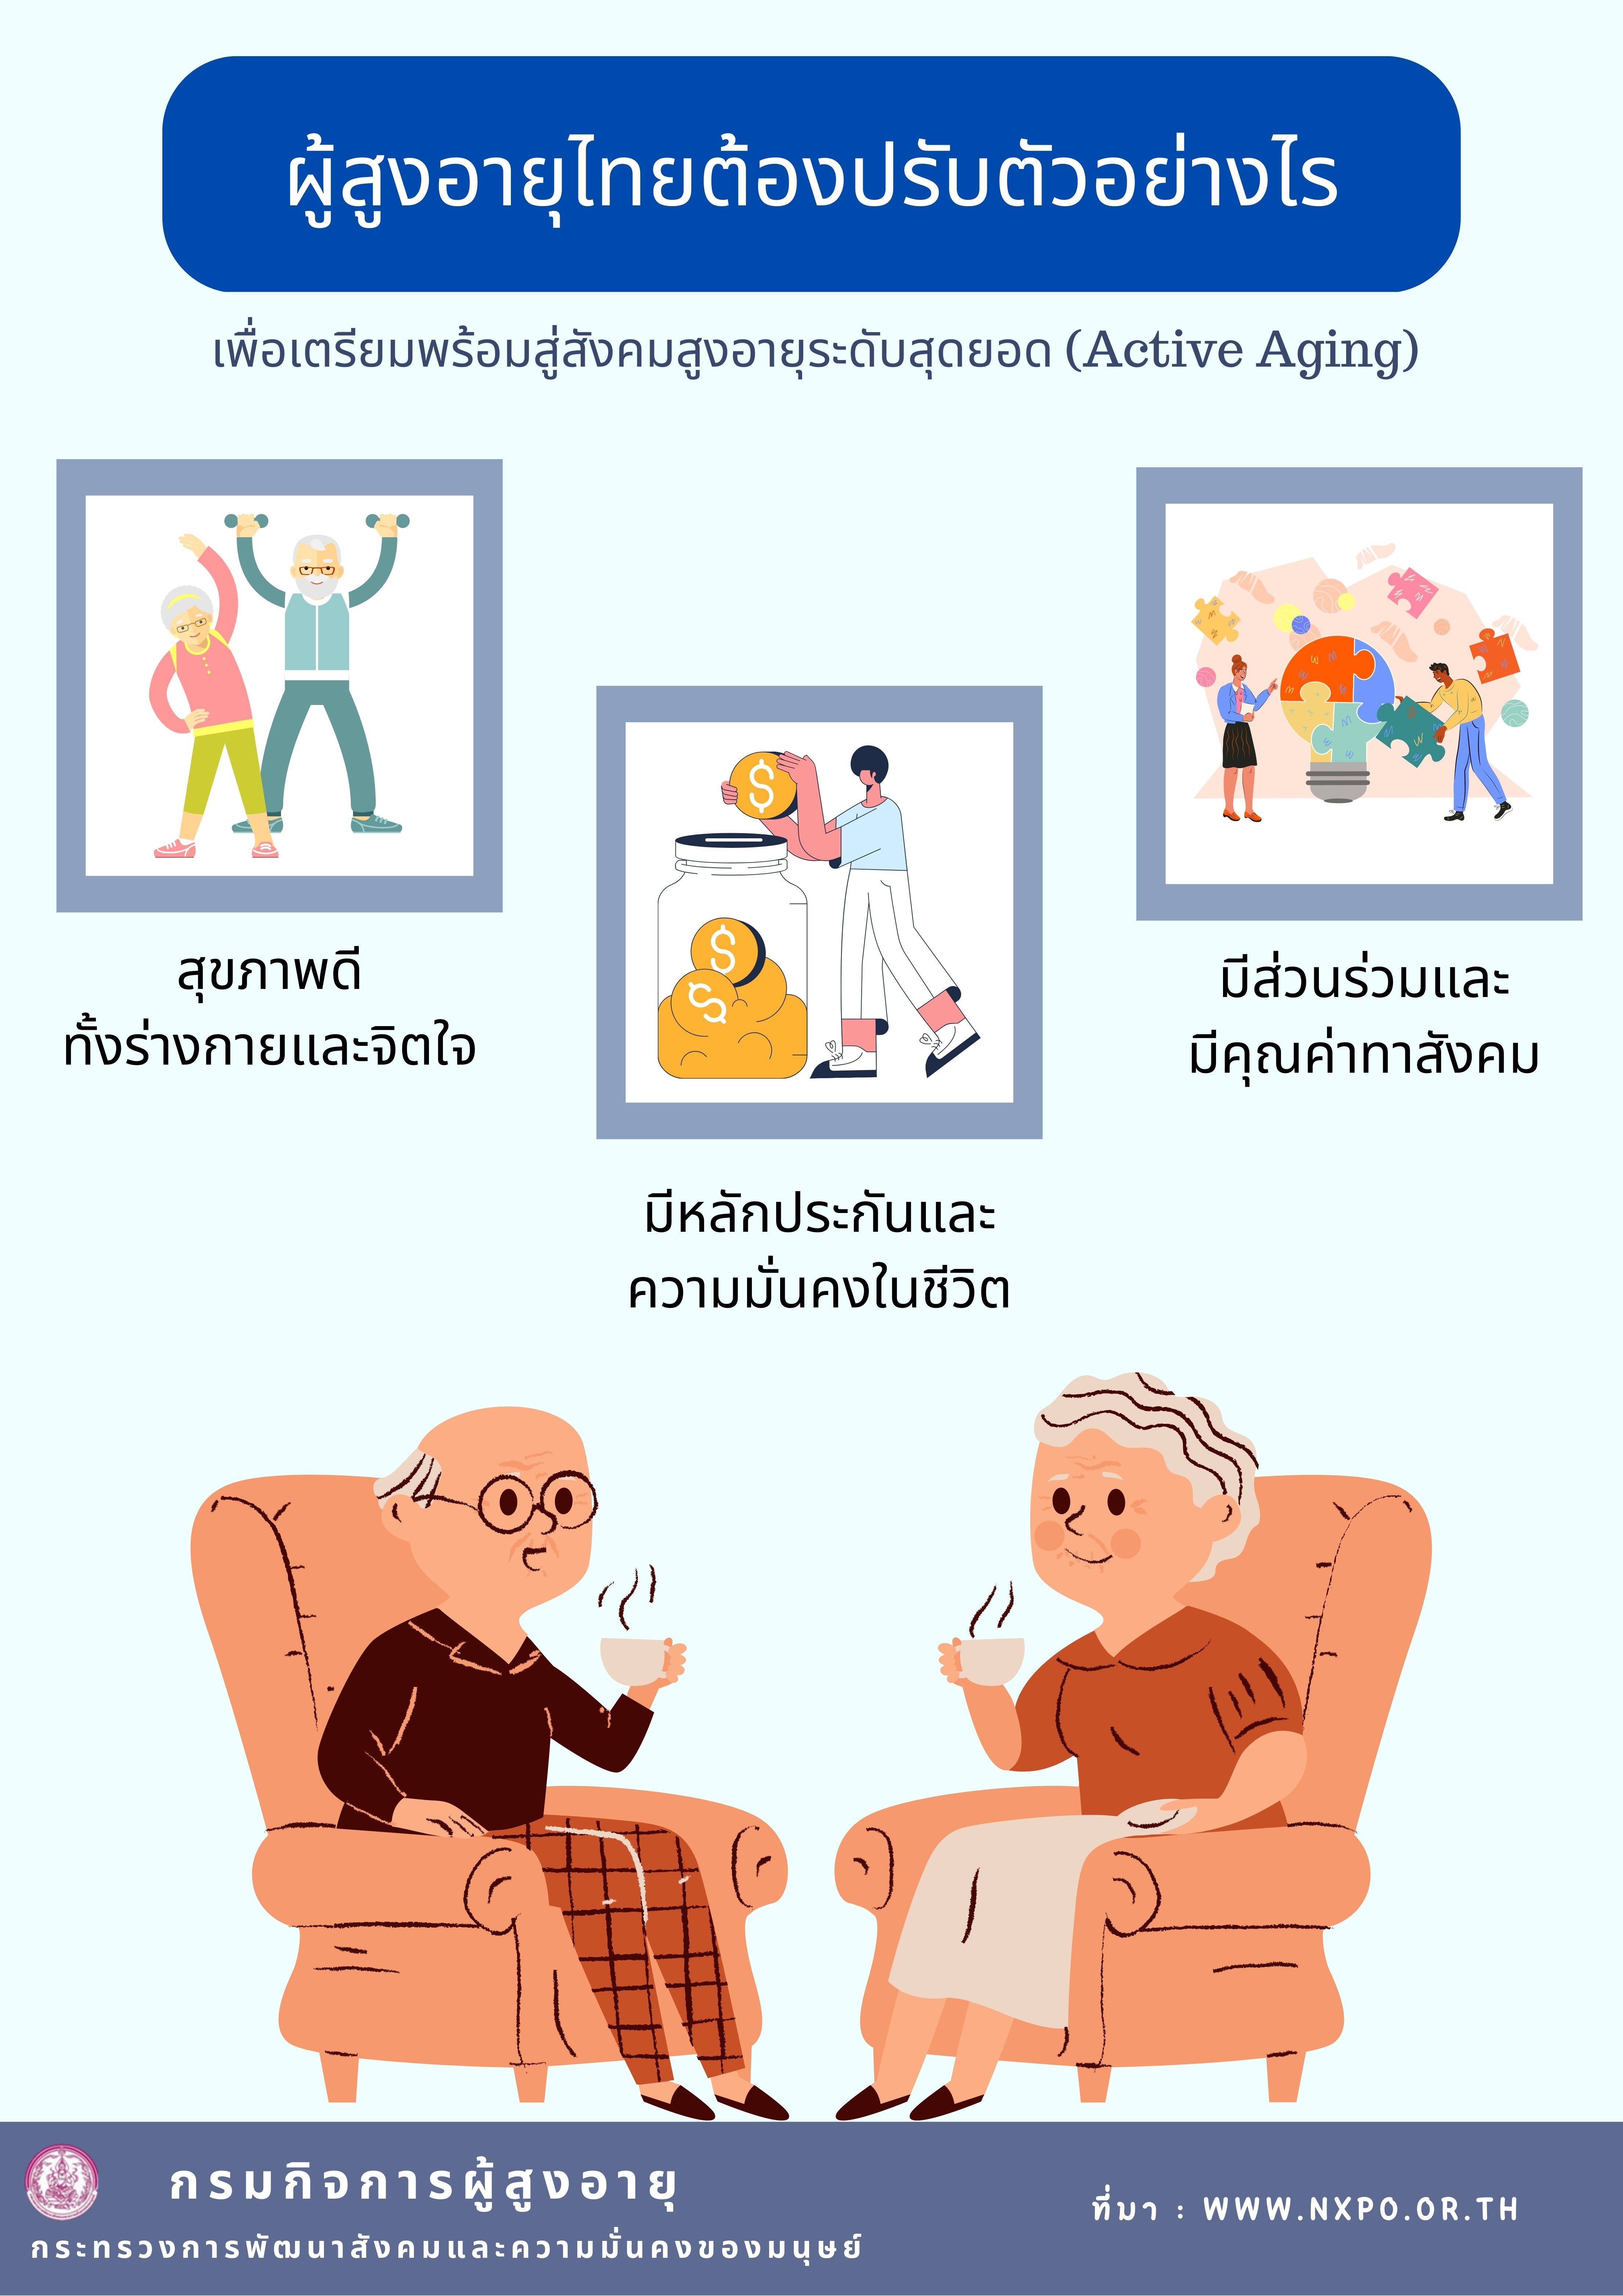 ผู้สูงอายุไทยต้องปรับตัวอย่างไร